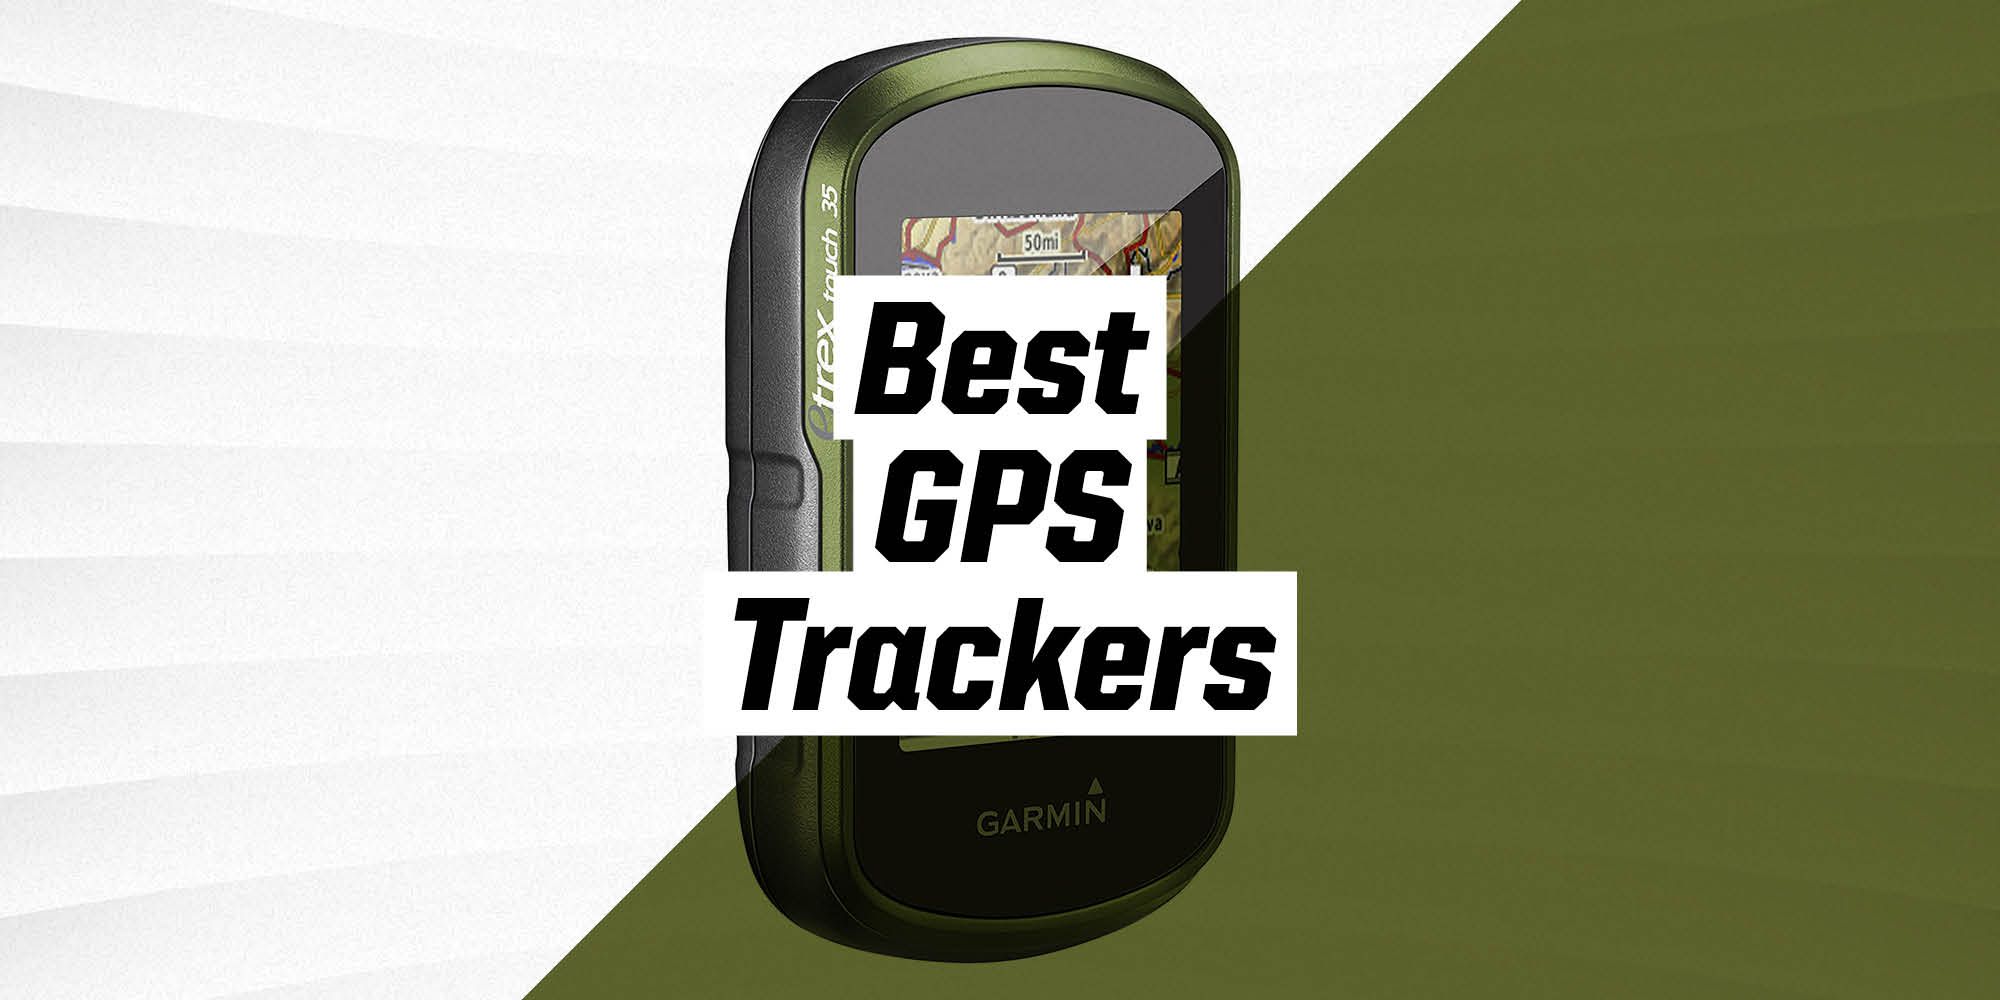 Interactie eenvoudig Vermoorden The 9 Best GPS Trackers 2021 - GPS Trackers for Cars & Hiking